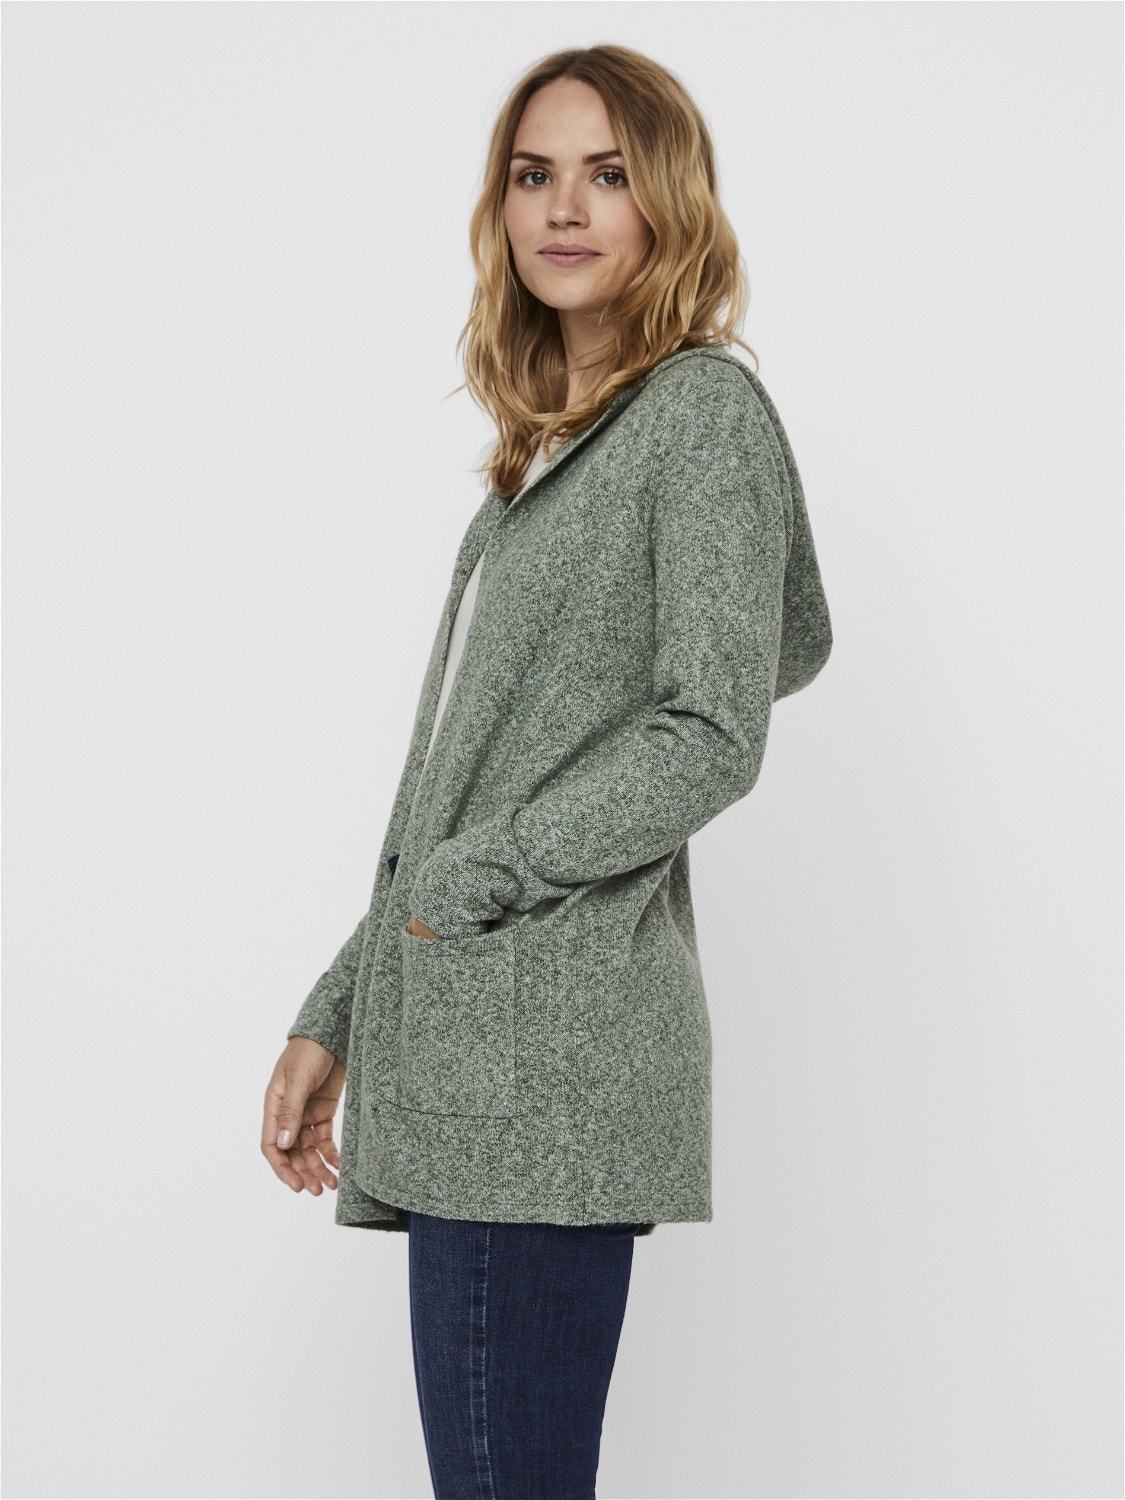 Cardigan | Medium Green VMDOFFY | Moda® Knit Vero